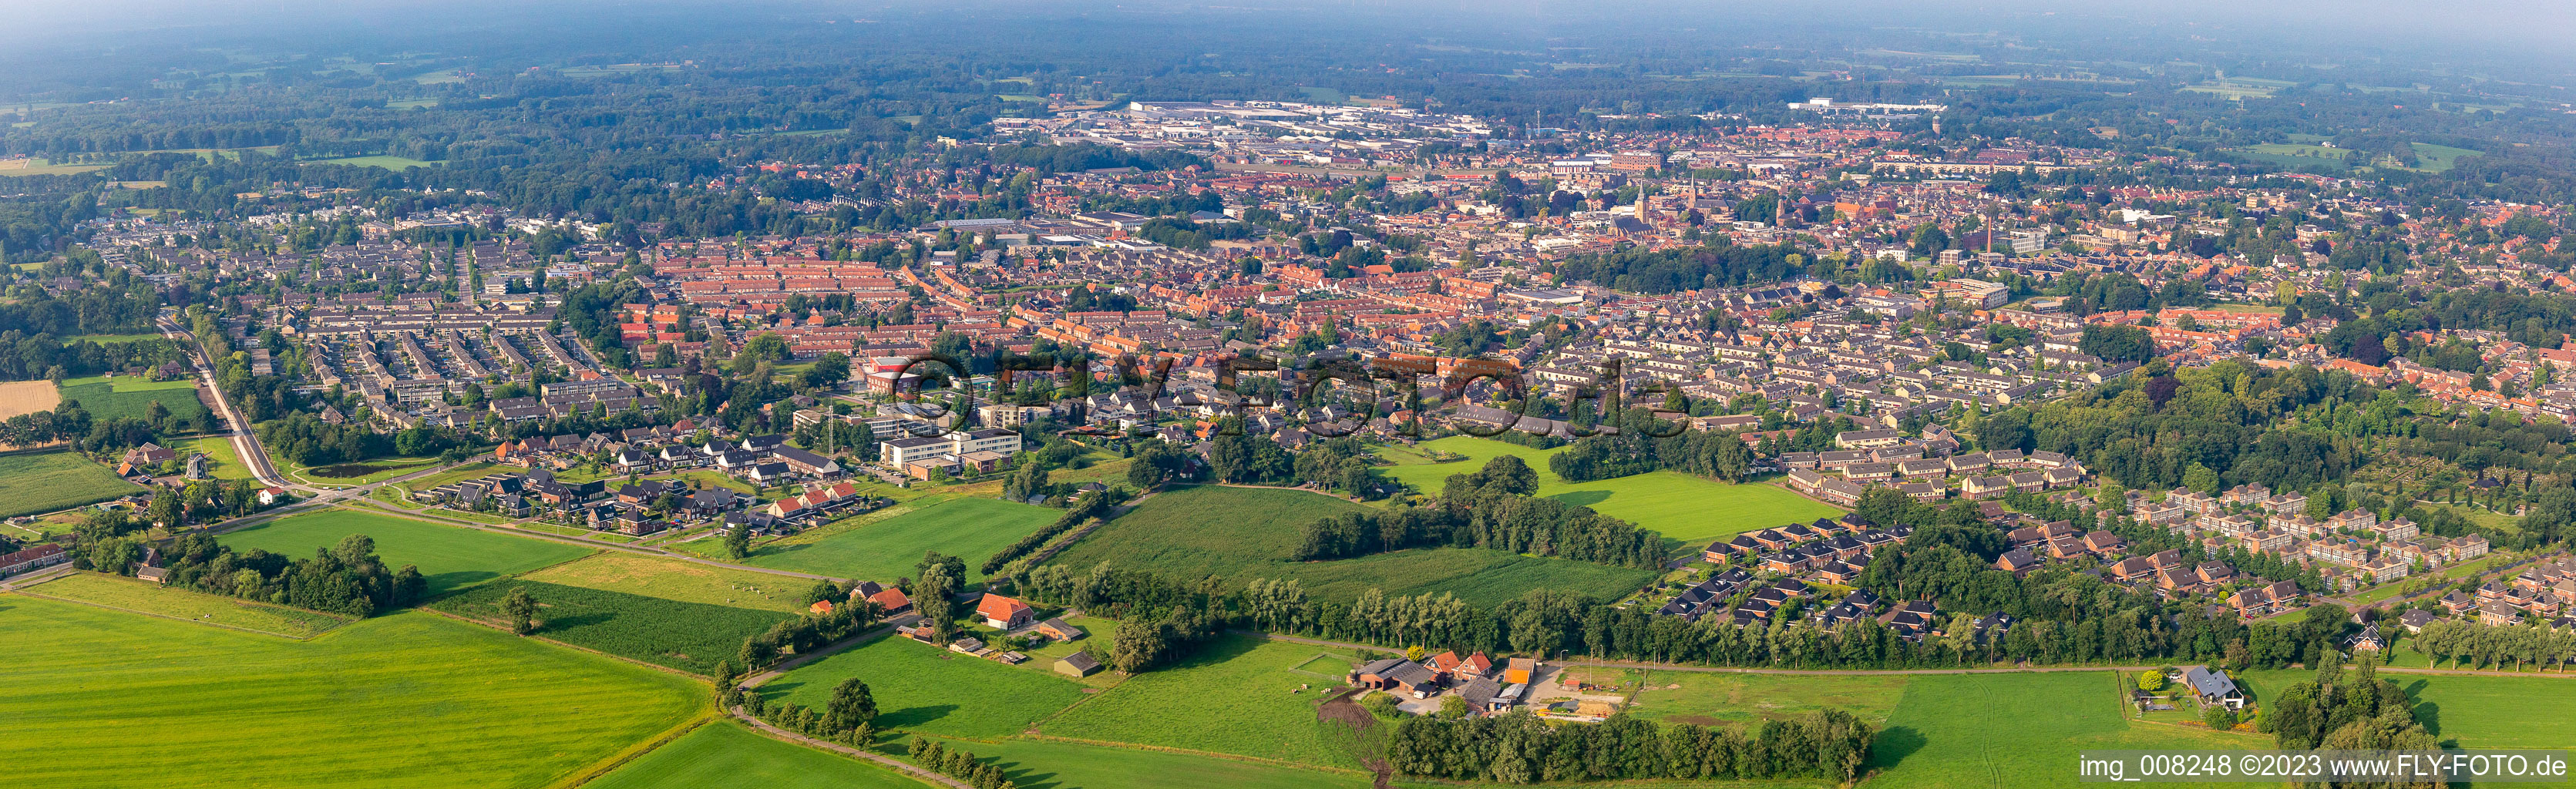 Panorama des Stadtgebiet mit Außenbezirken und Innenstadtbereich in Winterswijk in Gelderland, Niederlande